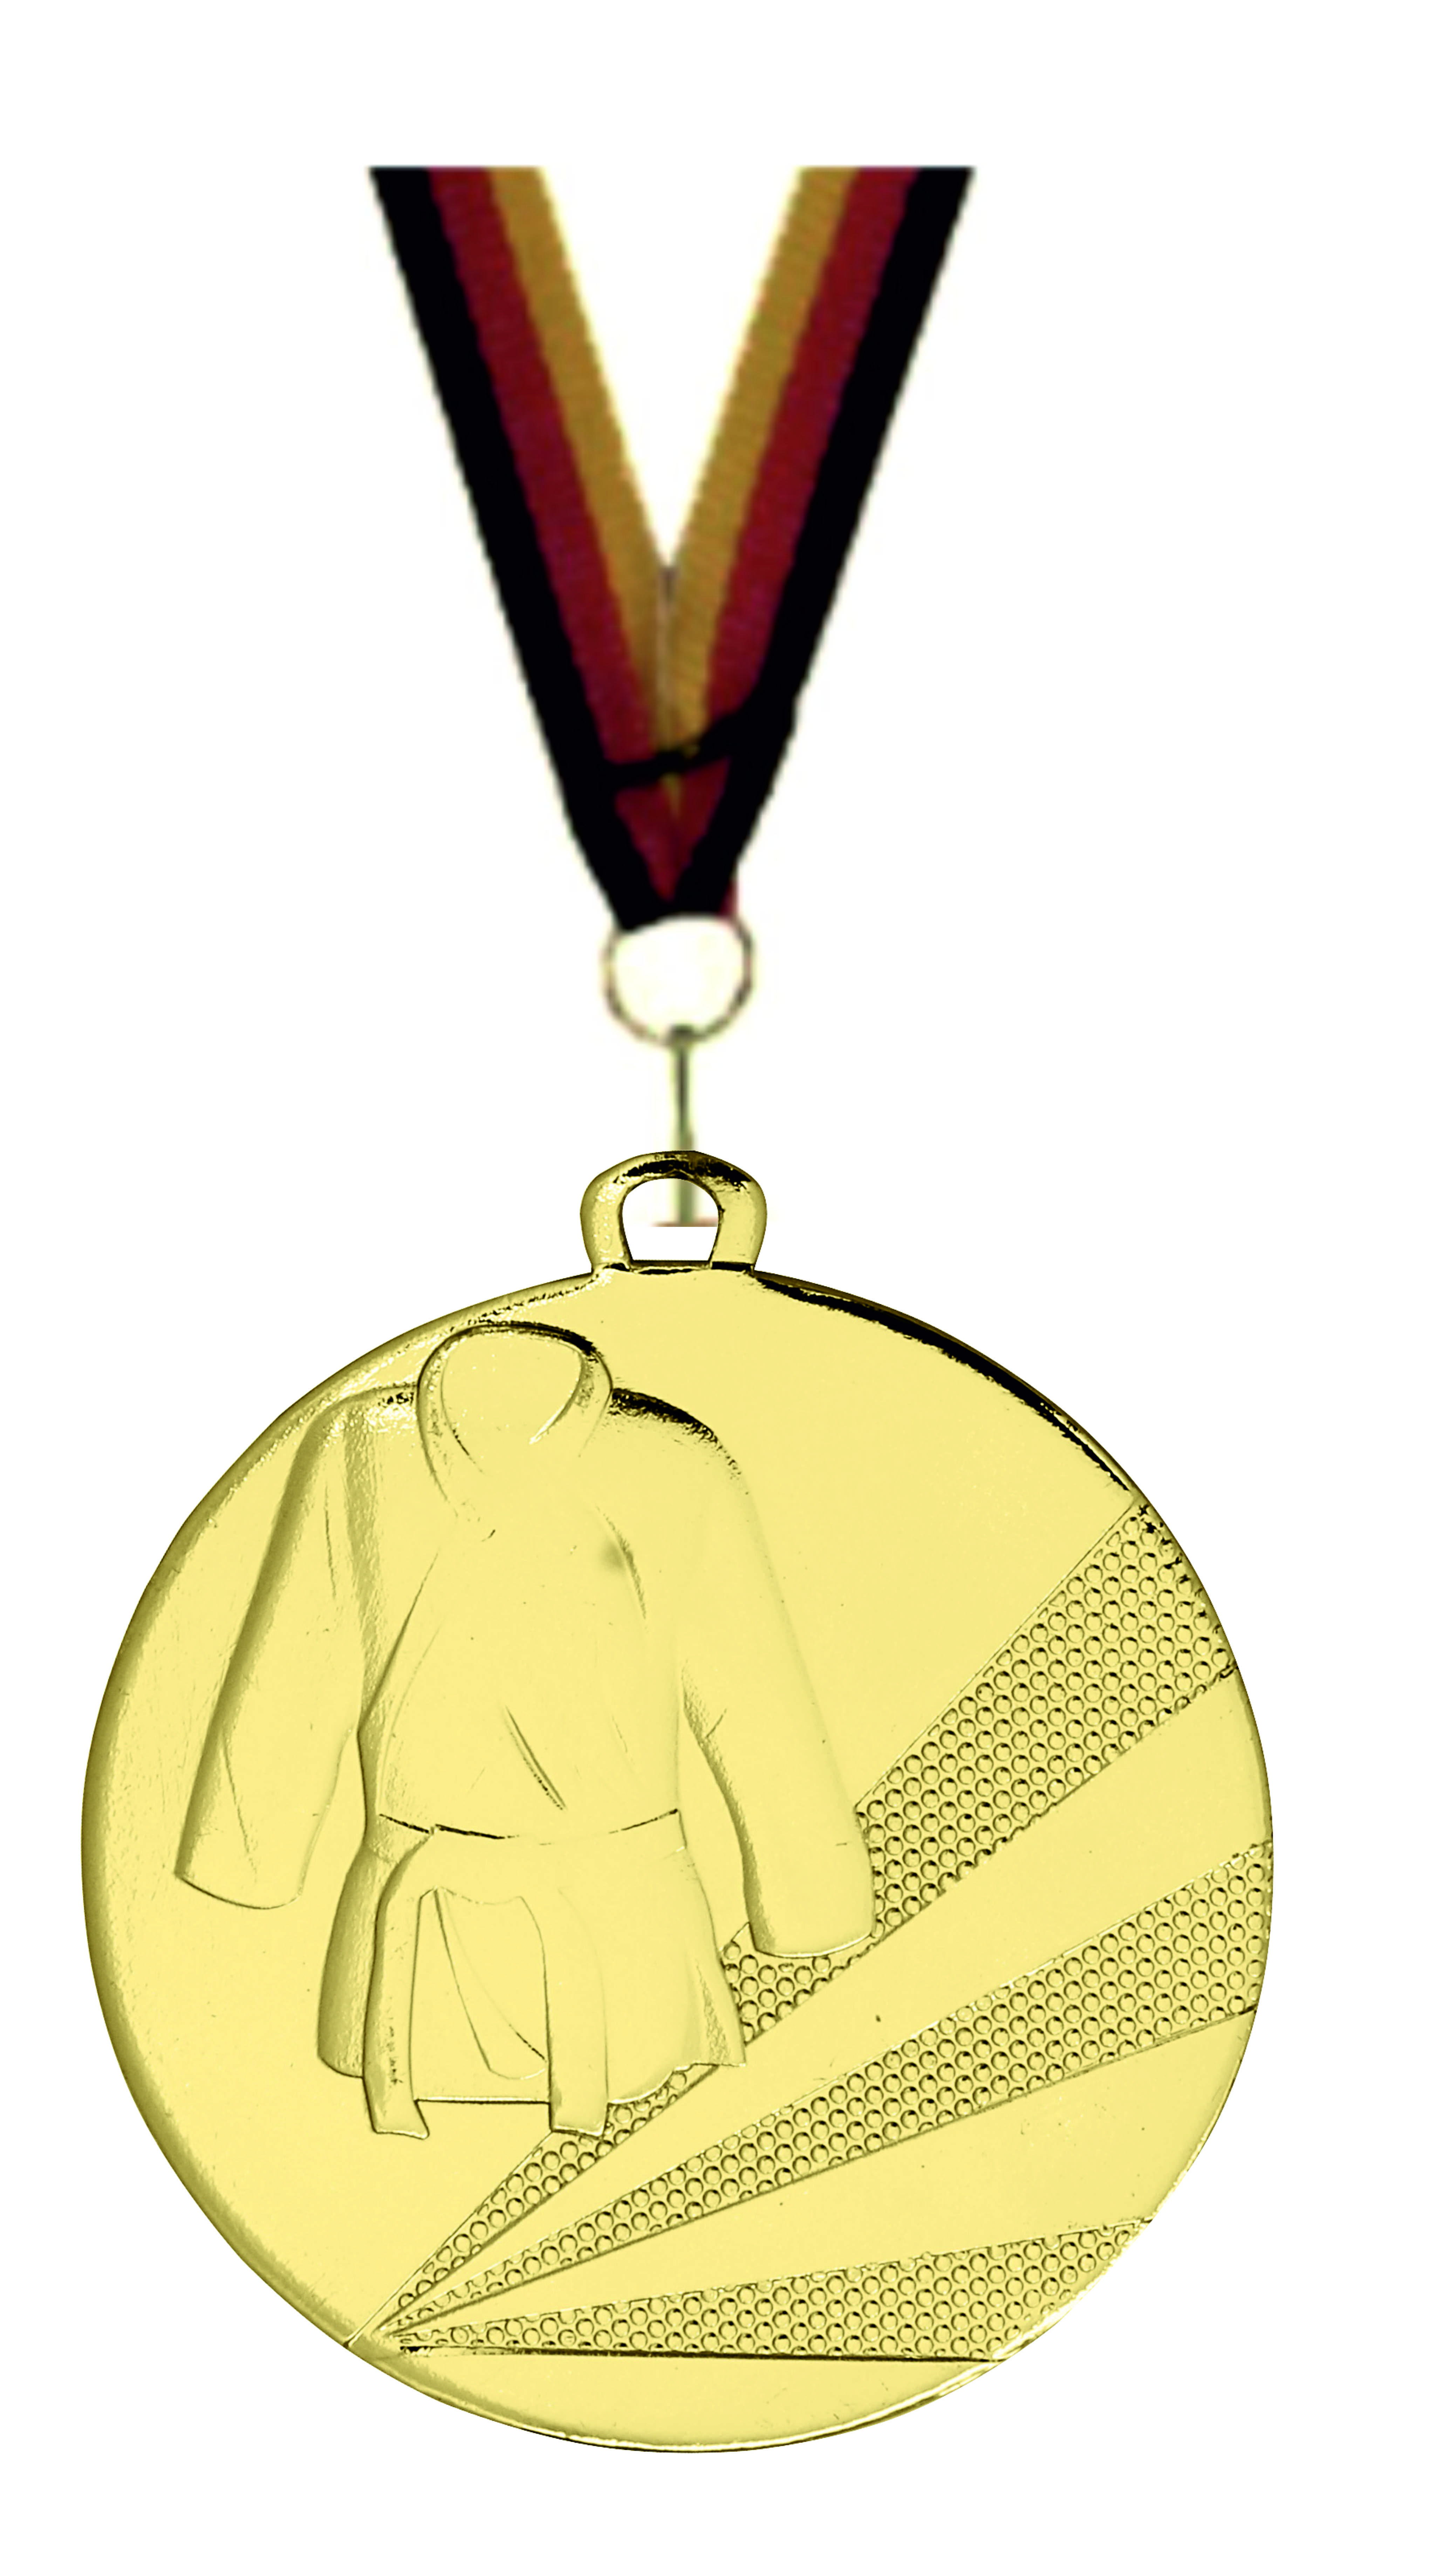 Judo-Kampfsport-Medaille D112D inkl. Band u. Beschriftung Gold Fertig montiert gegen Aufpreis